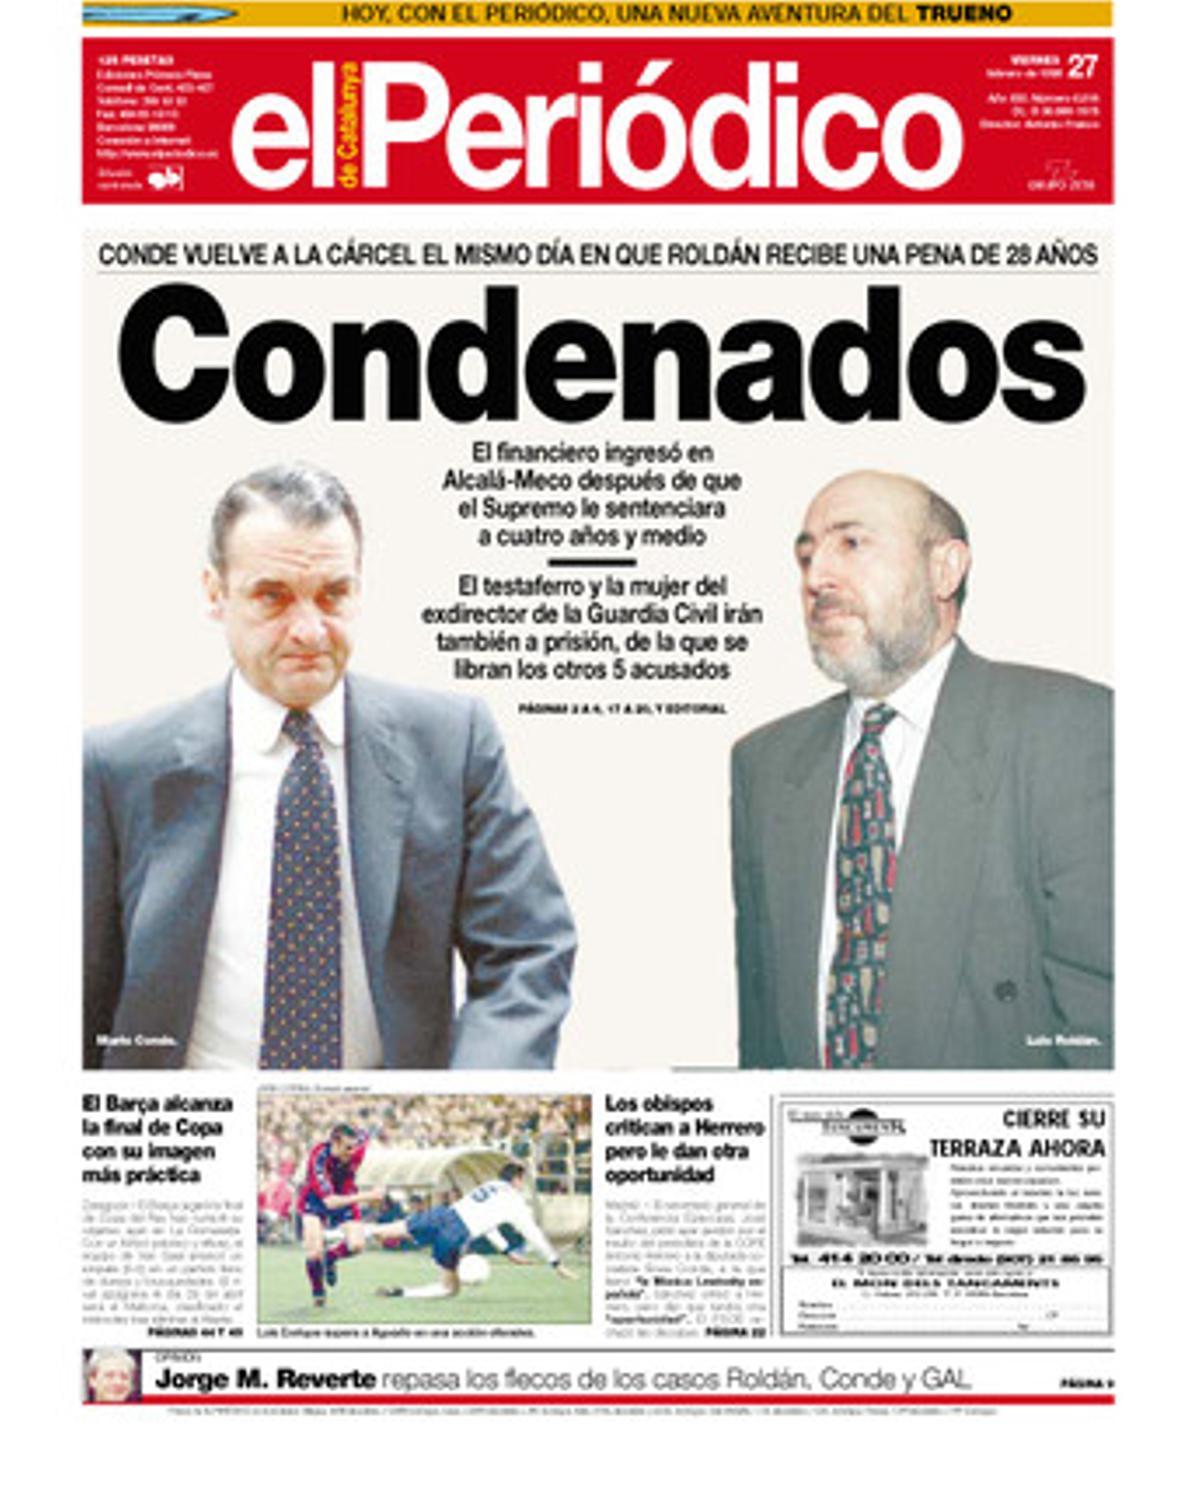 Condenados. Mario Conde vuelve a la cárcel el mismo día en que Luis Roldán recibe una pena de 28 años. Portada publicada el 27 de febrero de 1998.